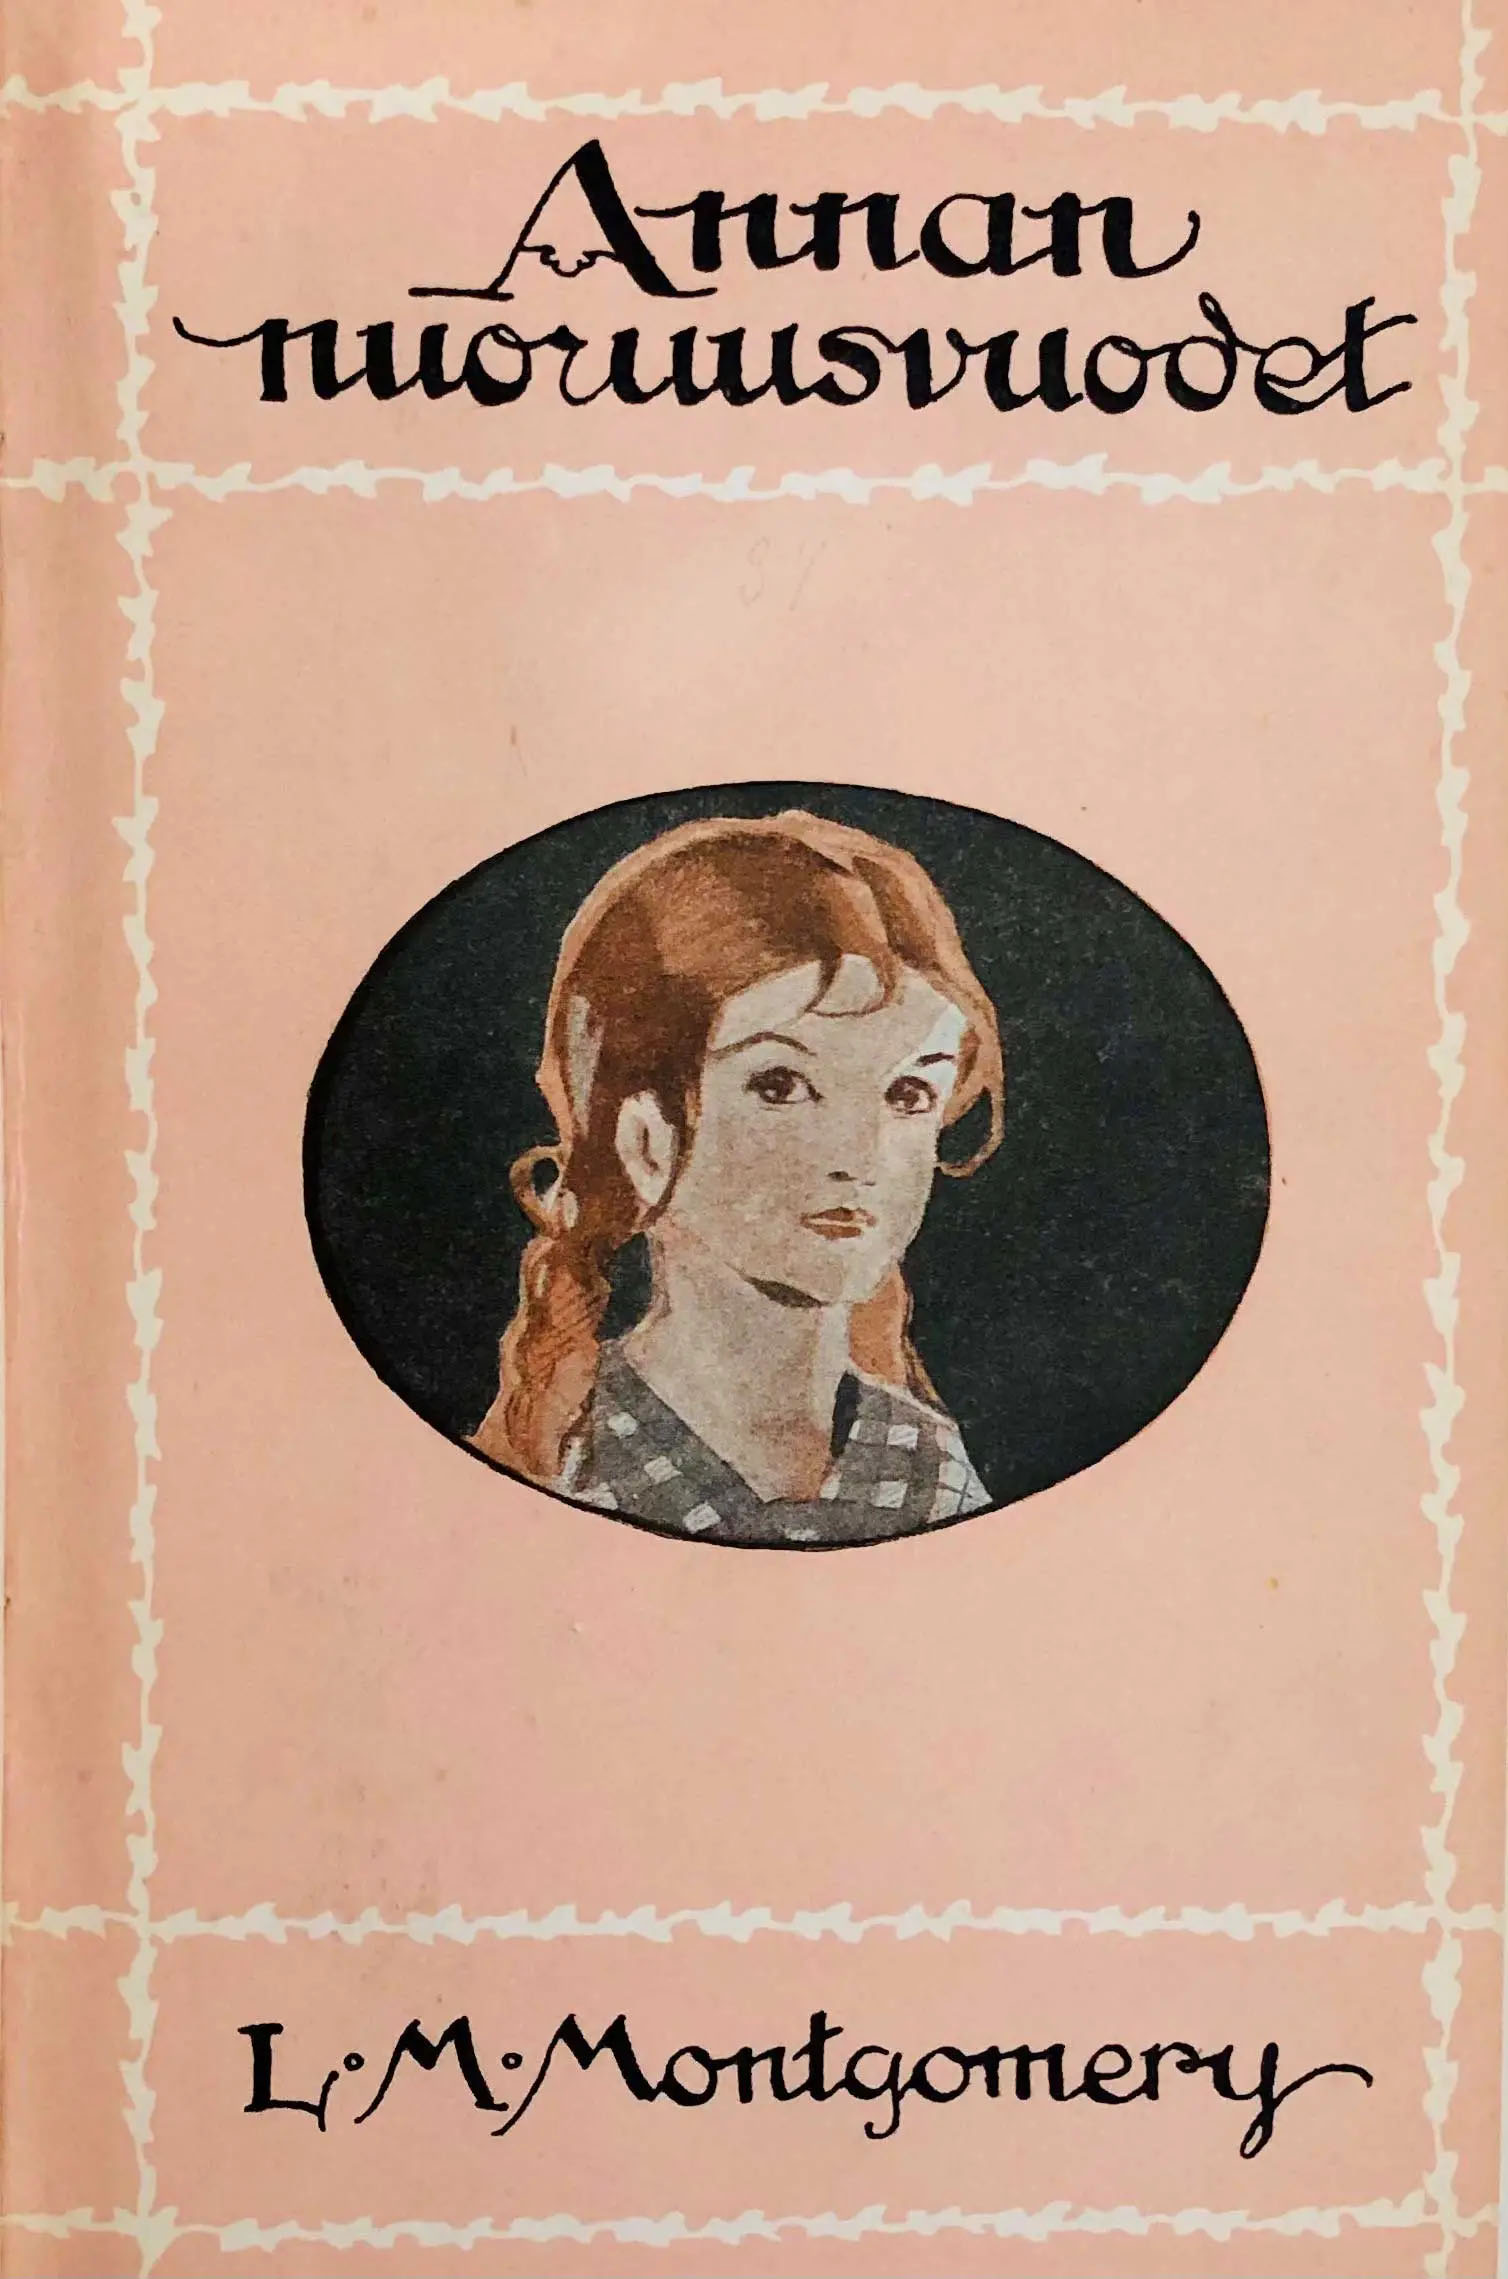 couverture de livre rose avec, au centre, l’illustration d’une fille aux cheveux roux.